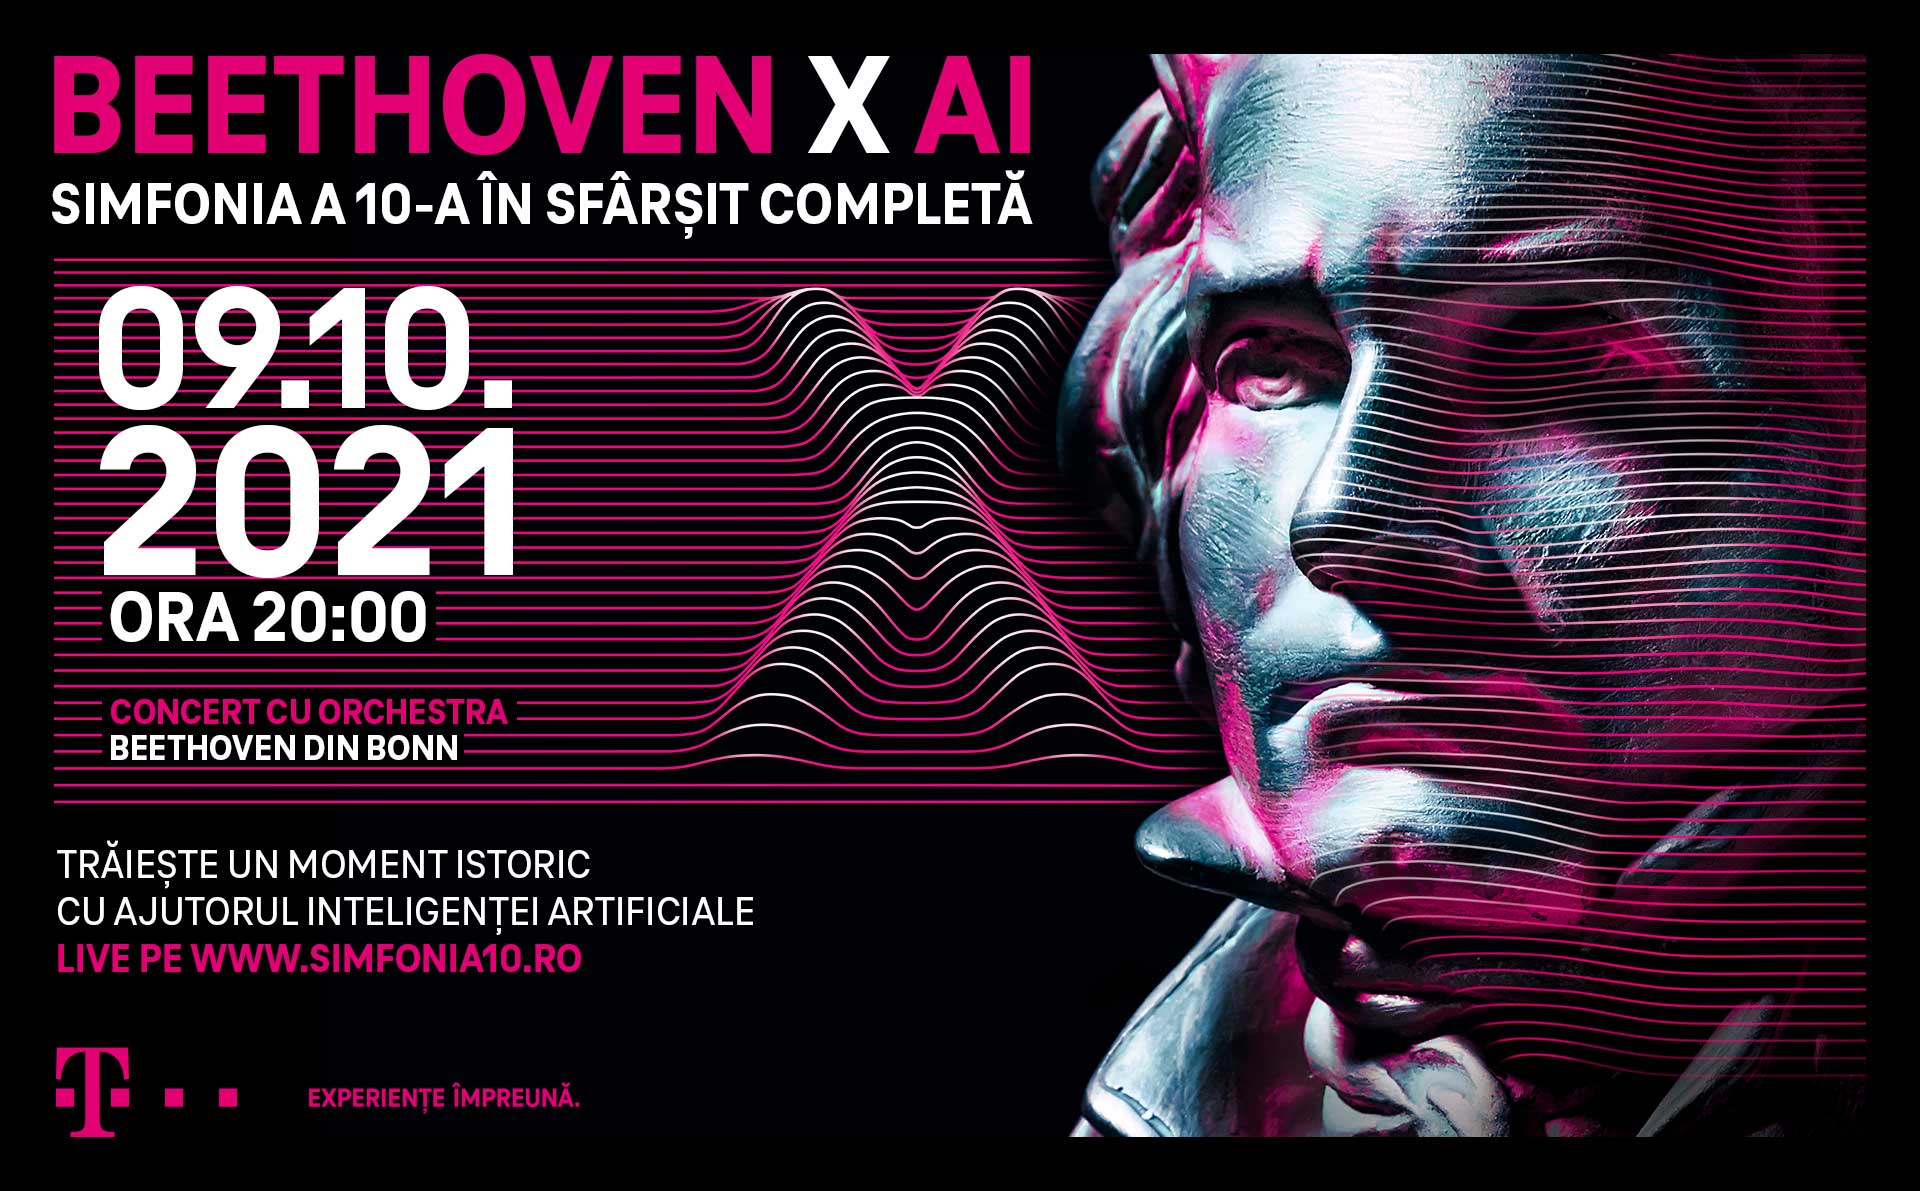 Finalizarea cu ajutorul AI a celei de-a X-a simfonii a lui Beethoven la Bonn, transmisă live și în România